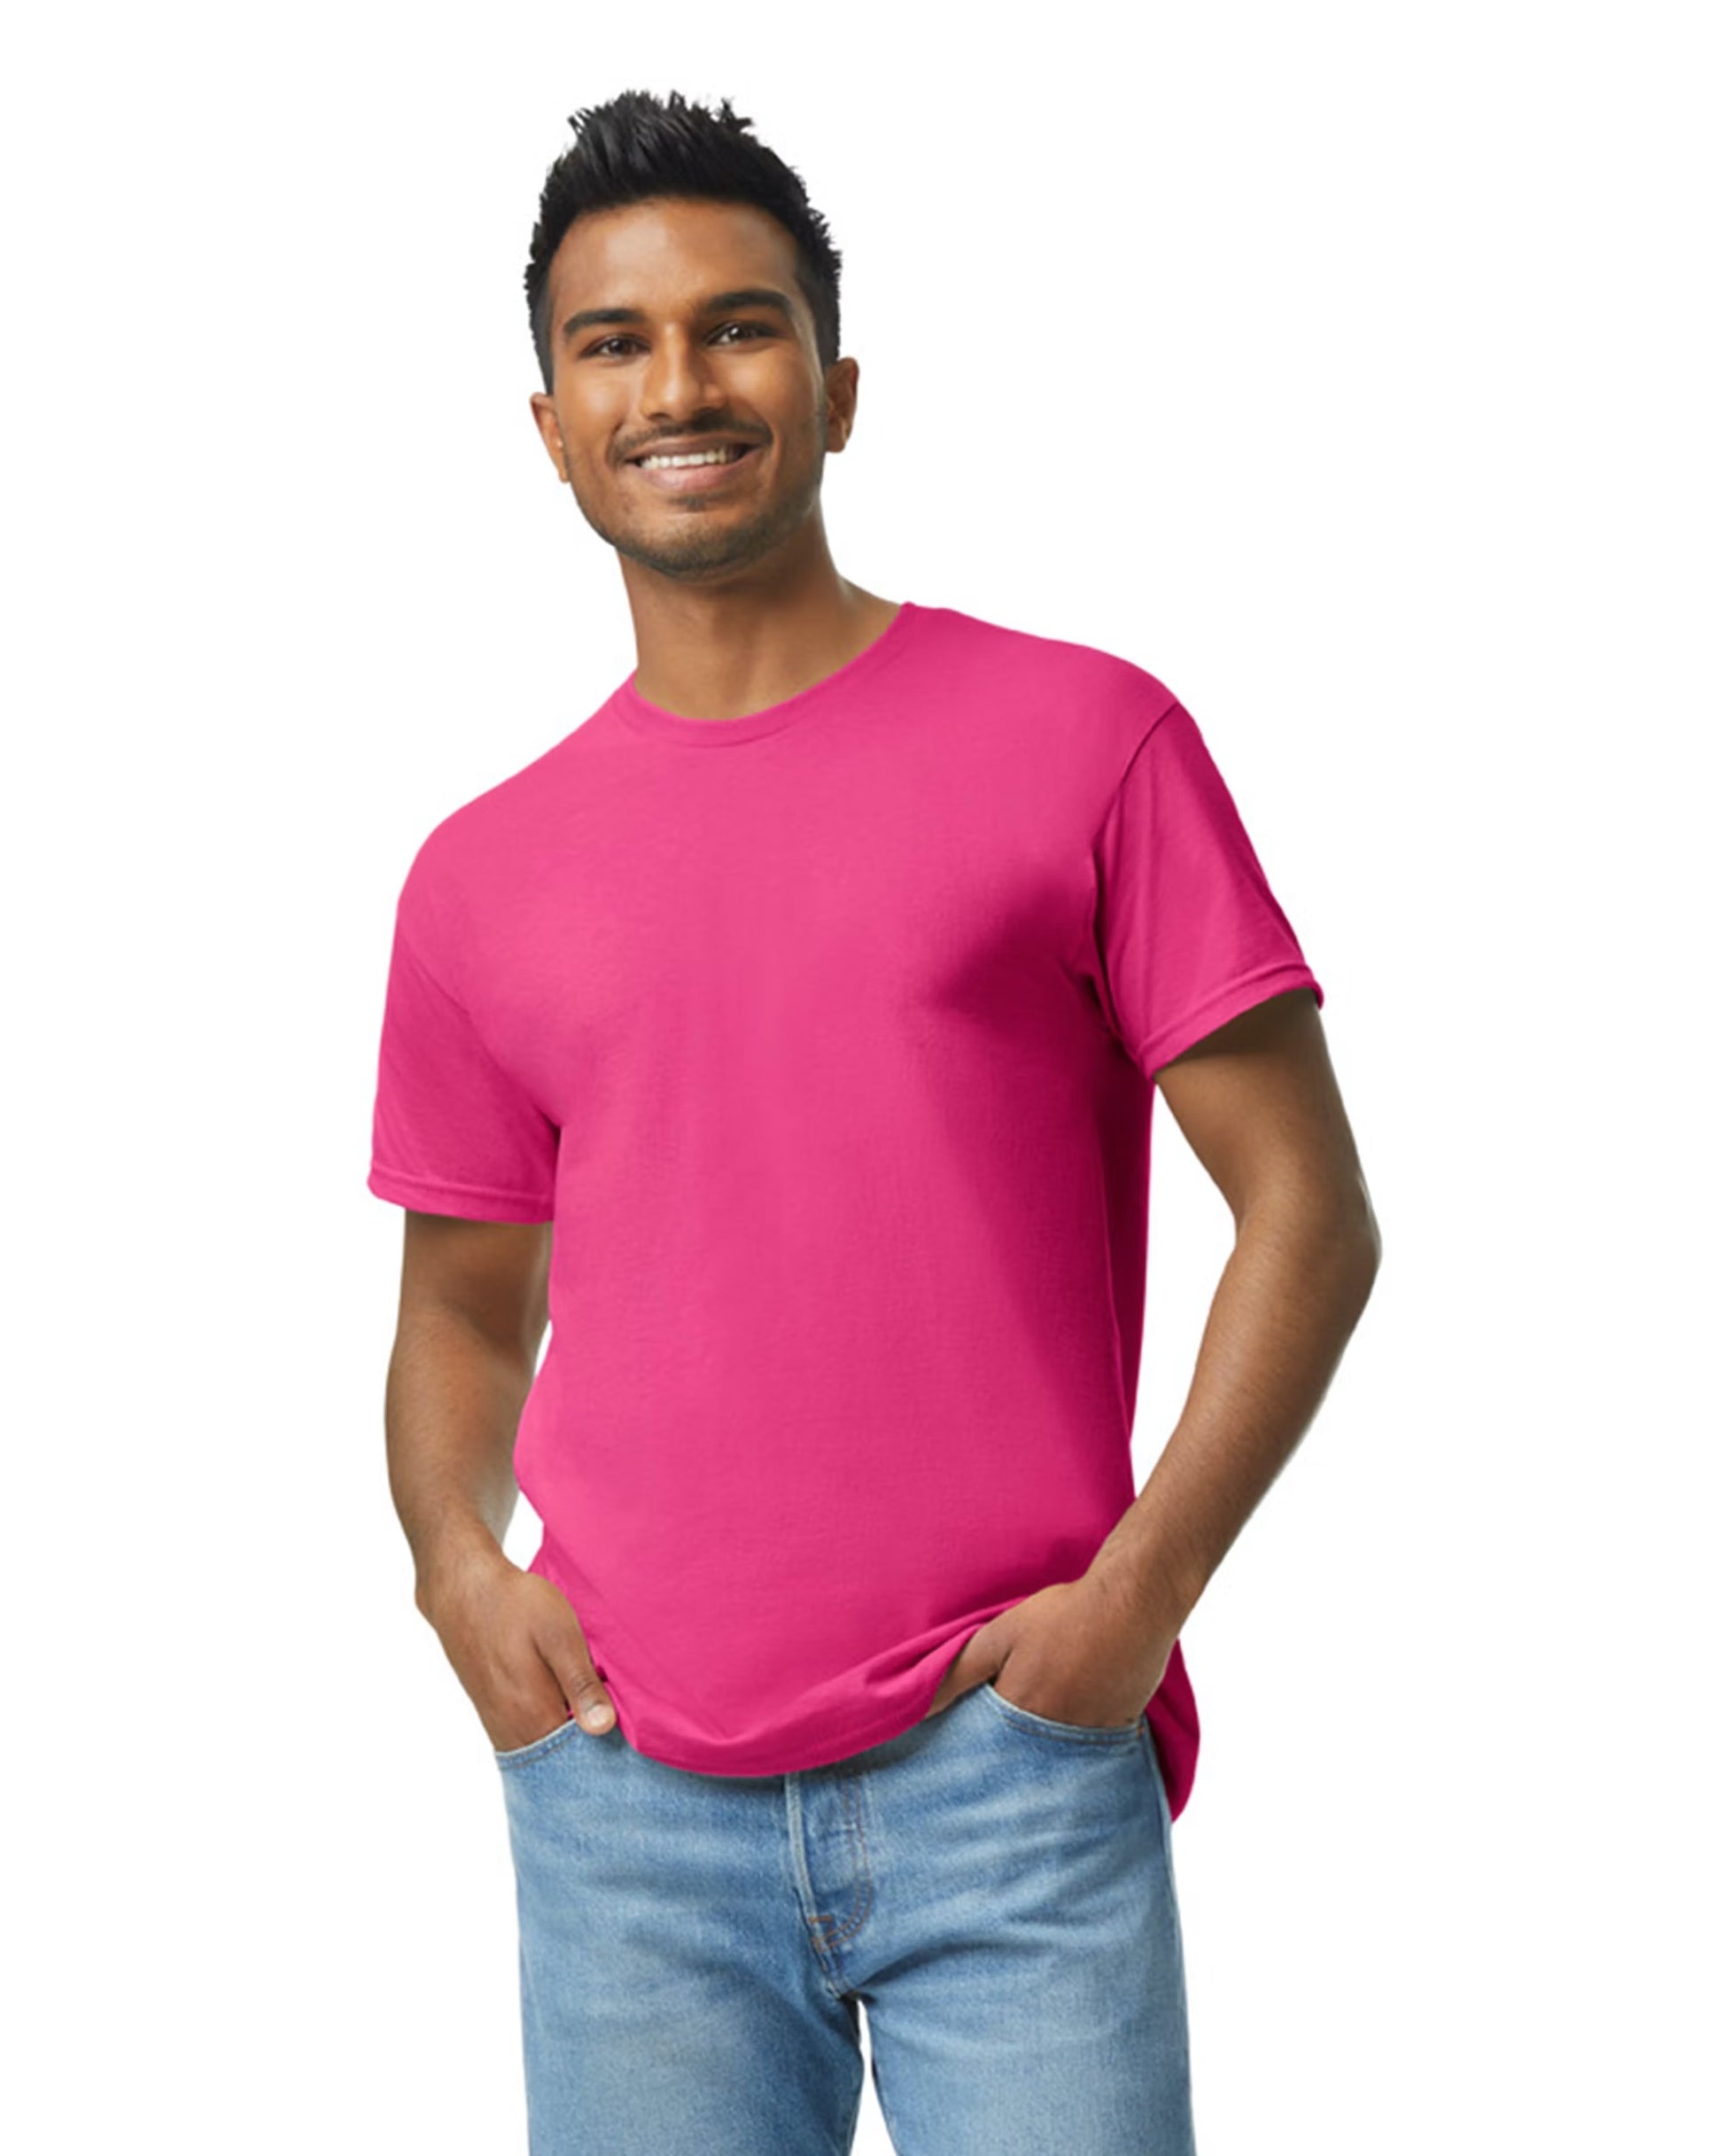 Wholesale Men's Core Cotton T-Shirt - Neon Green PC54, Case of 72